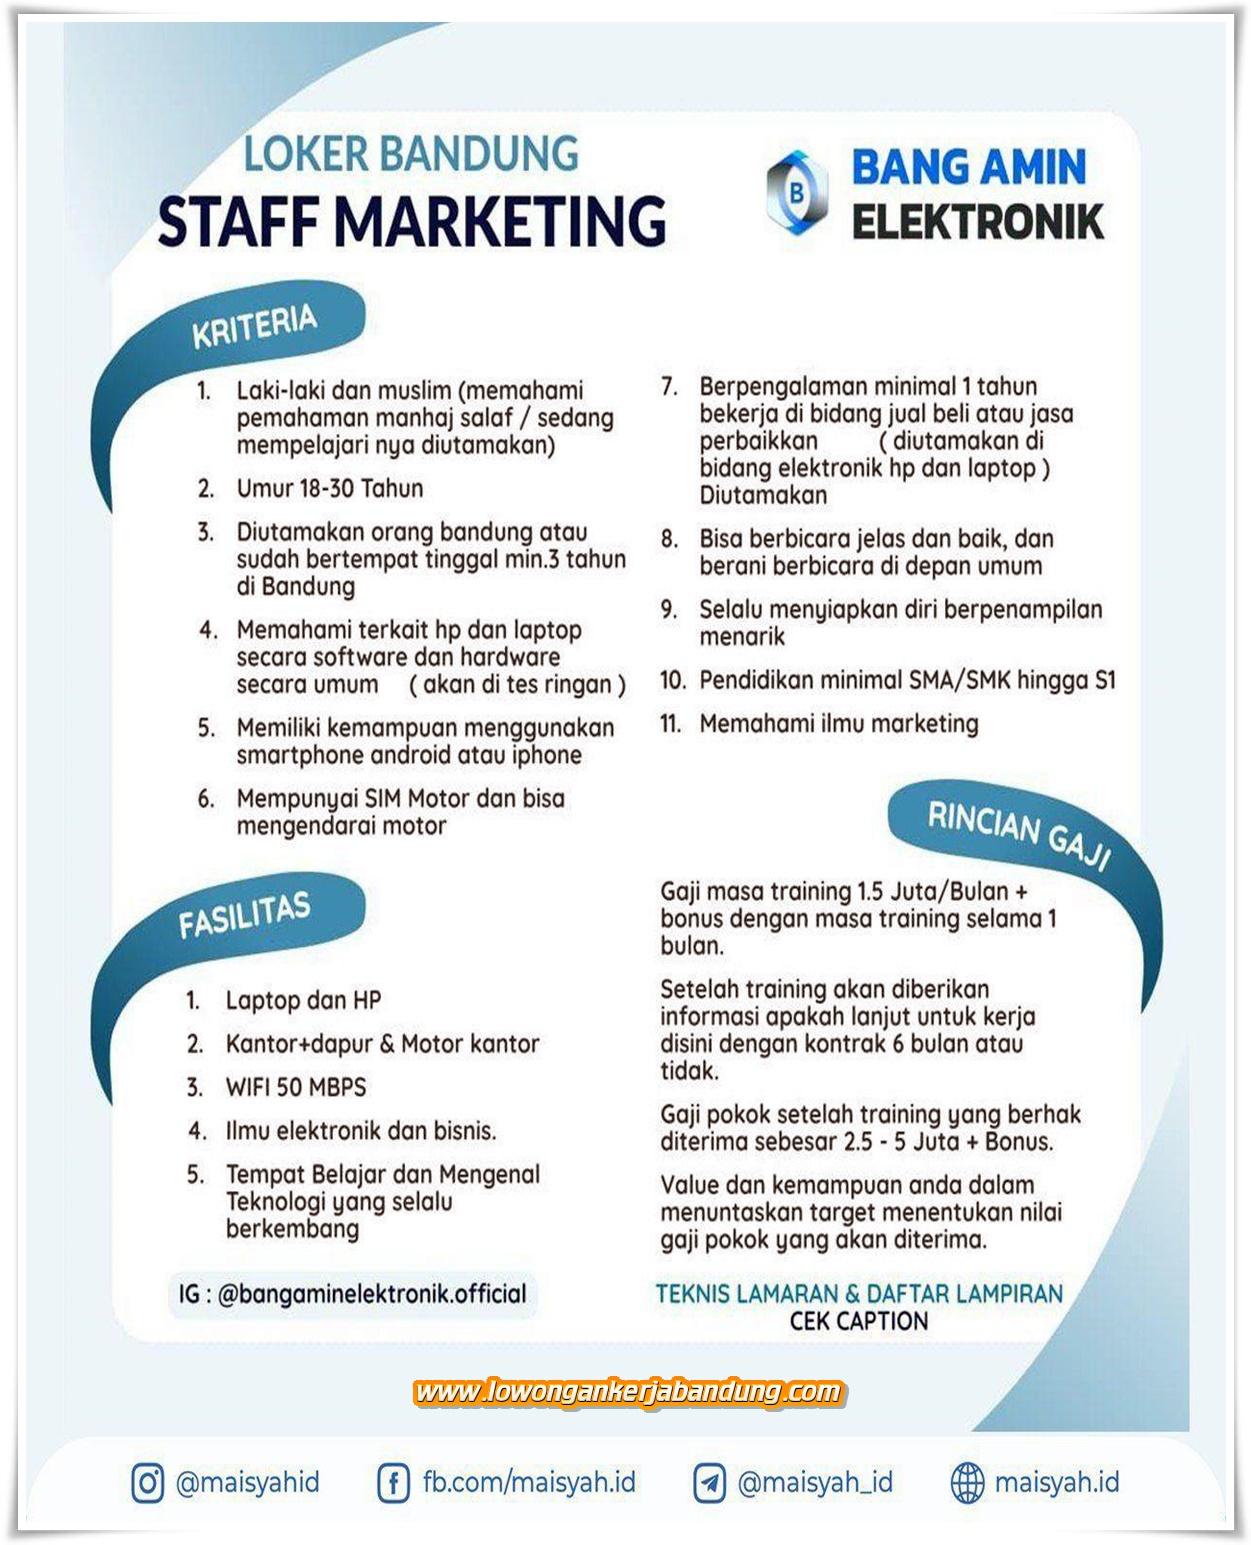 Lowongan Kerja Bandung Marketing Bang Amin Elektronik - Loker Bandung